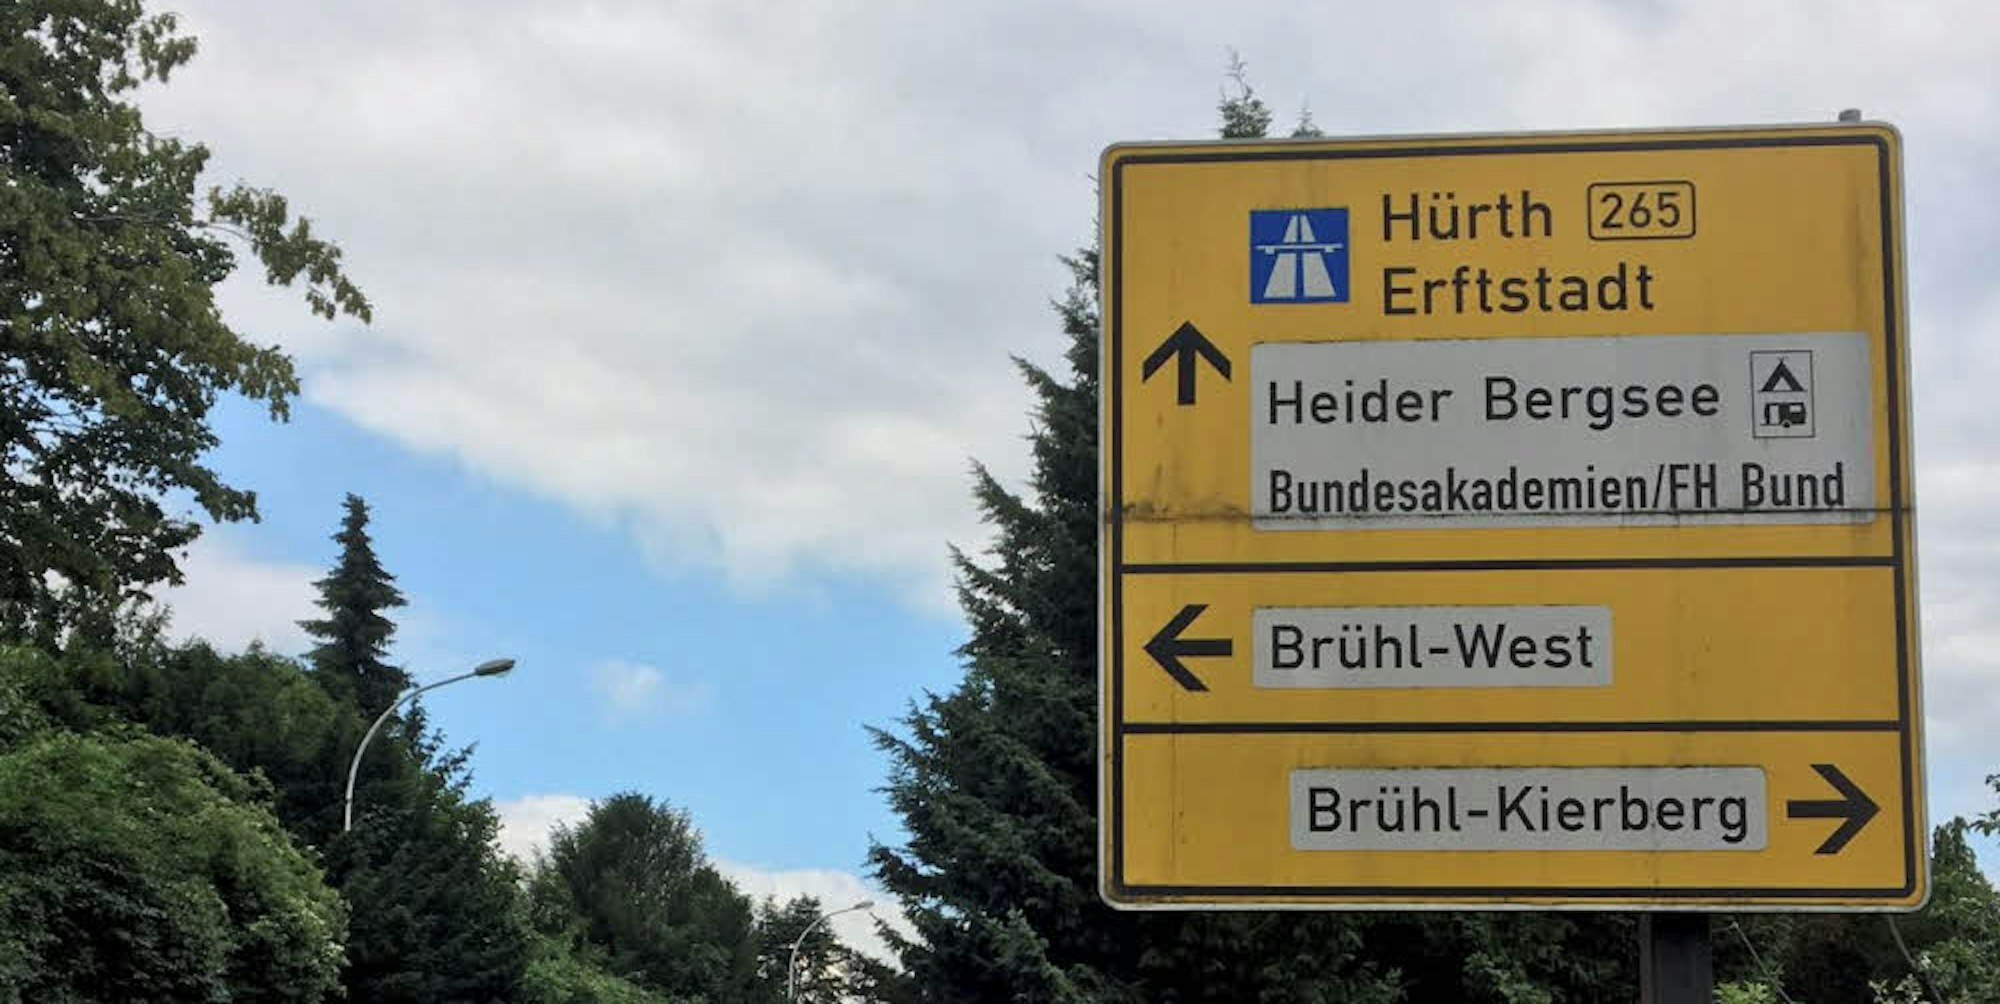 Die Hinweistafeln täuschen. Über die Theodor-Heuss-Straße sind Erftstadt und Hürth derzeit nicht mehr zu erreichen.